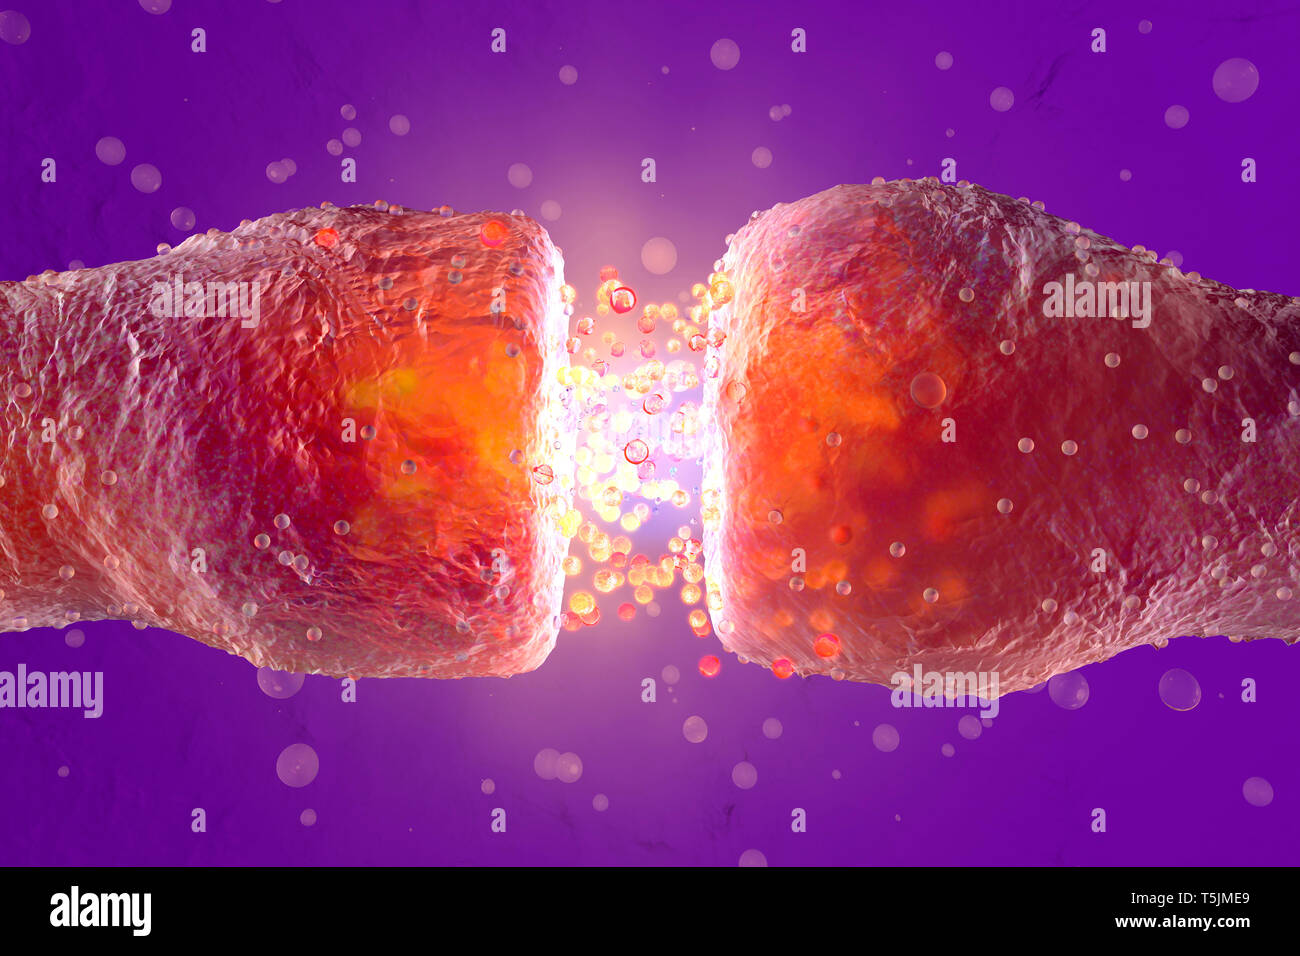 Gerenderten 3D-Illustration, Visualisierung von Neuronen feuern Neurotransmitter im synaptischen Spalt Stockfoto